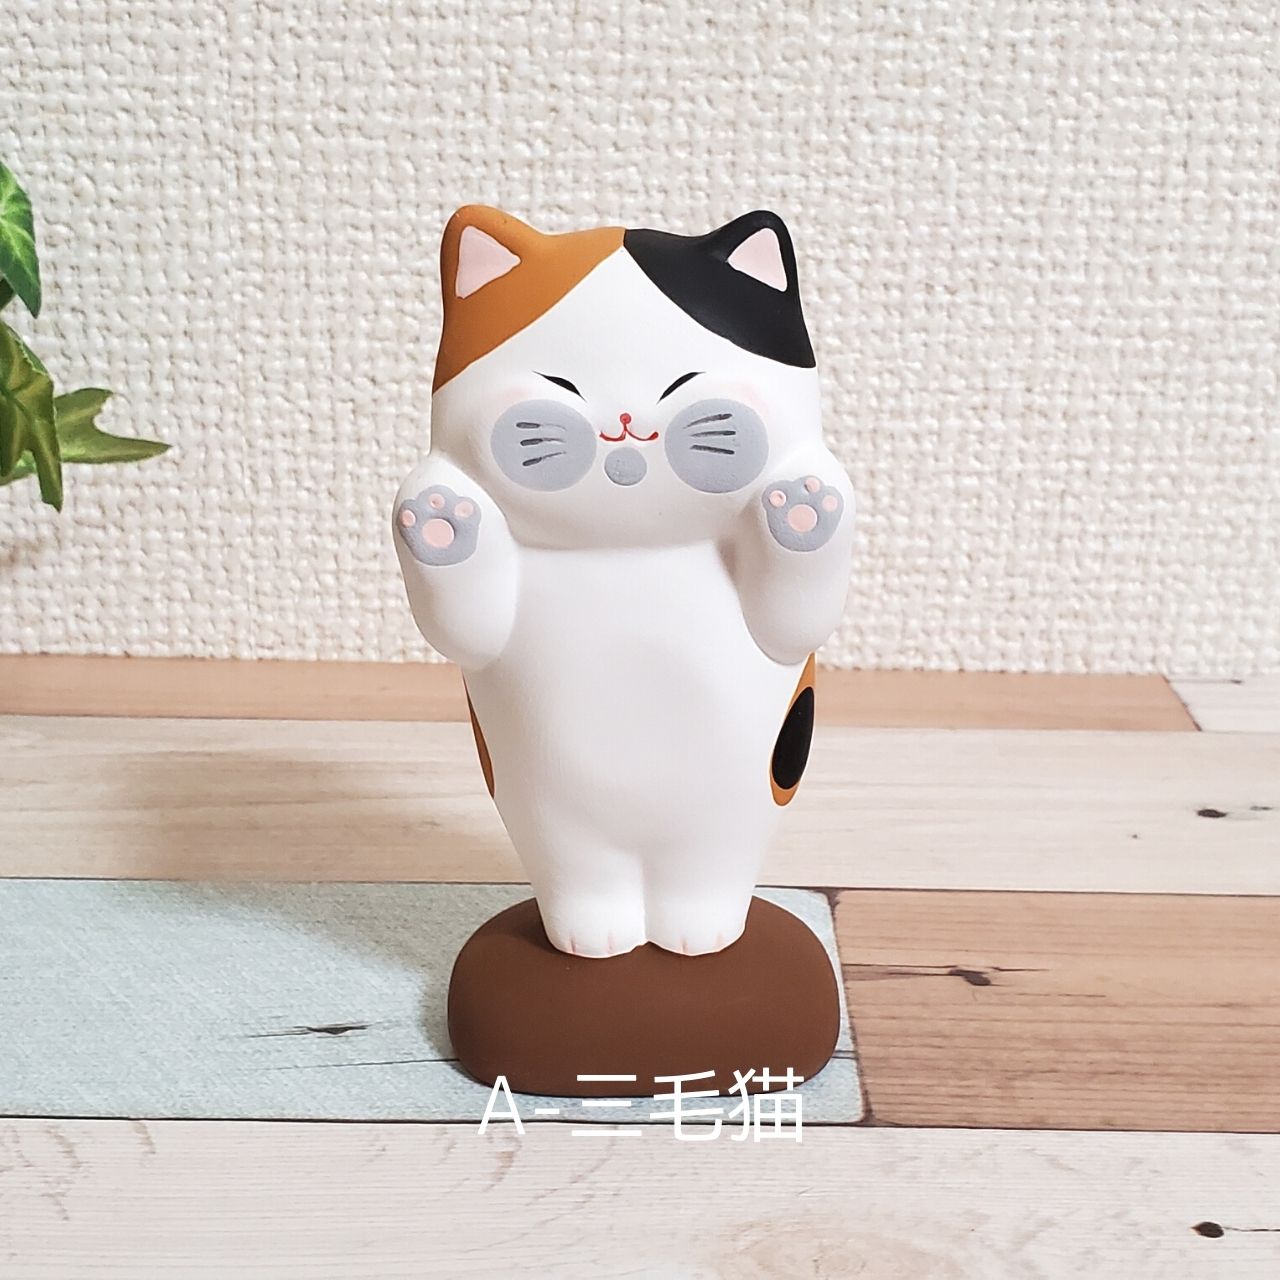 素焼き陶器のかわいいぺったり猫(三毛・茶トラ・グレー)